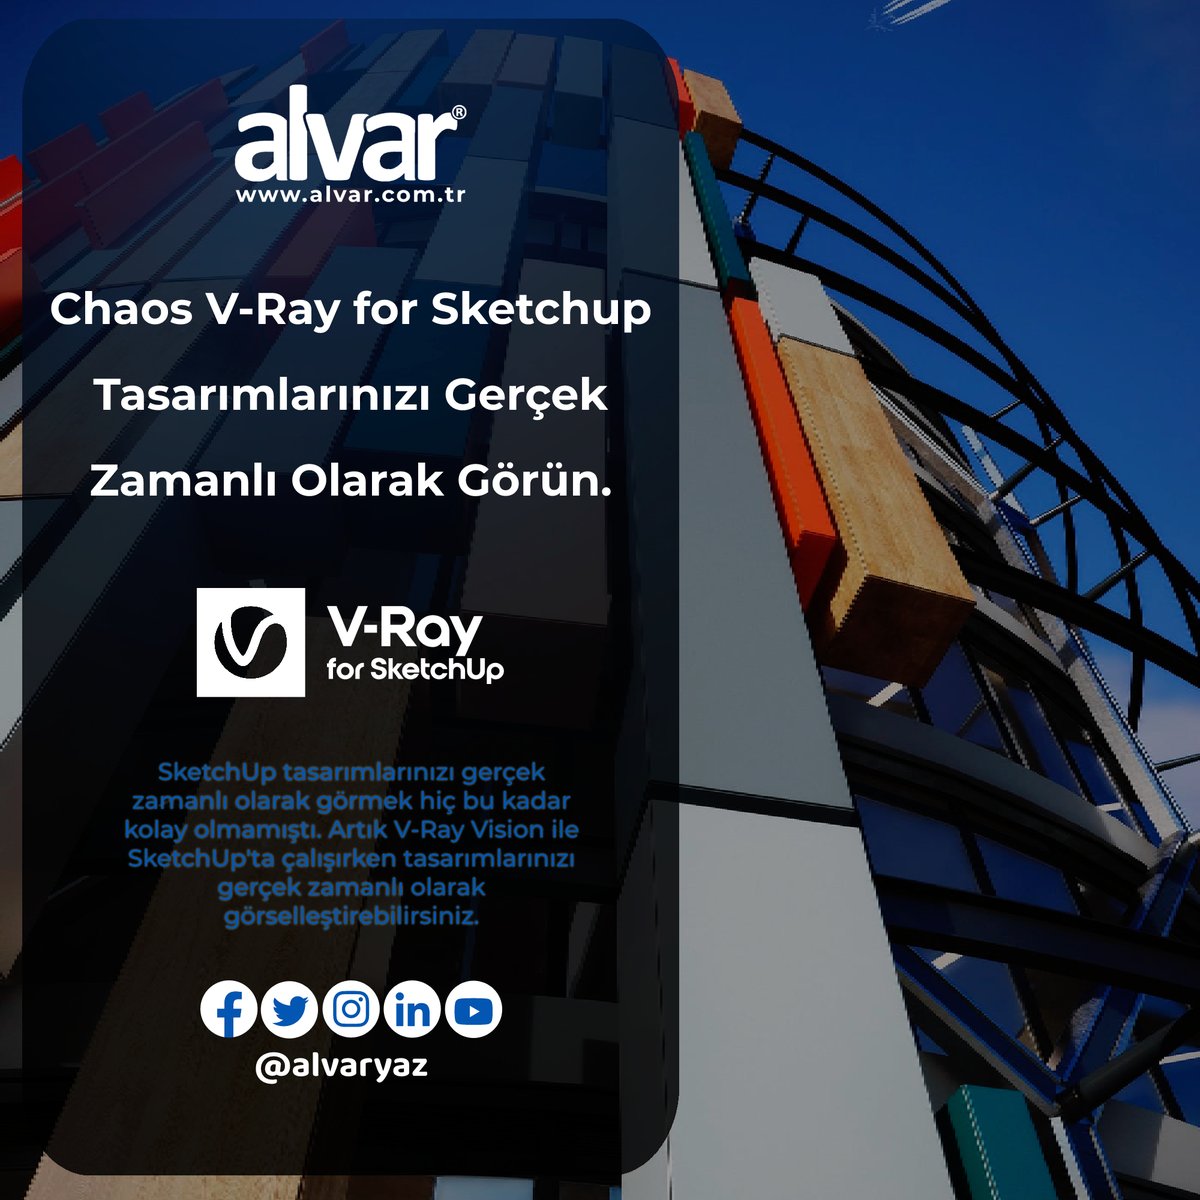 Chaos Vray for SketchUp ile tasarımlarınızı gerçek zamanlı olarak görmek hiç bu kadar kolay olmamıştı. 
Daha Fazlası İçin Websitemizi Ziyaret Edebilirsiniz.
alvar.com.tr/yazilim/v-ray
#vray #chaosvray #sketchup #vraysketchup #render #işleme #alvaryaz